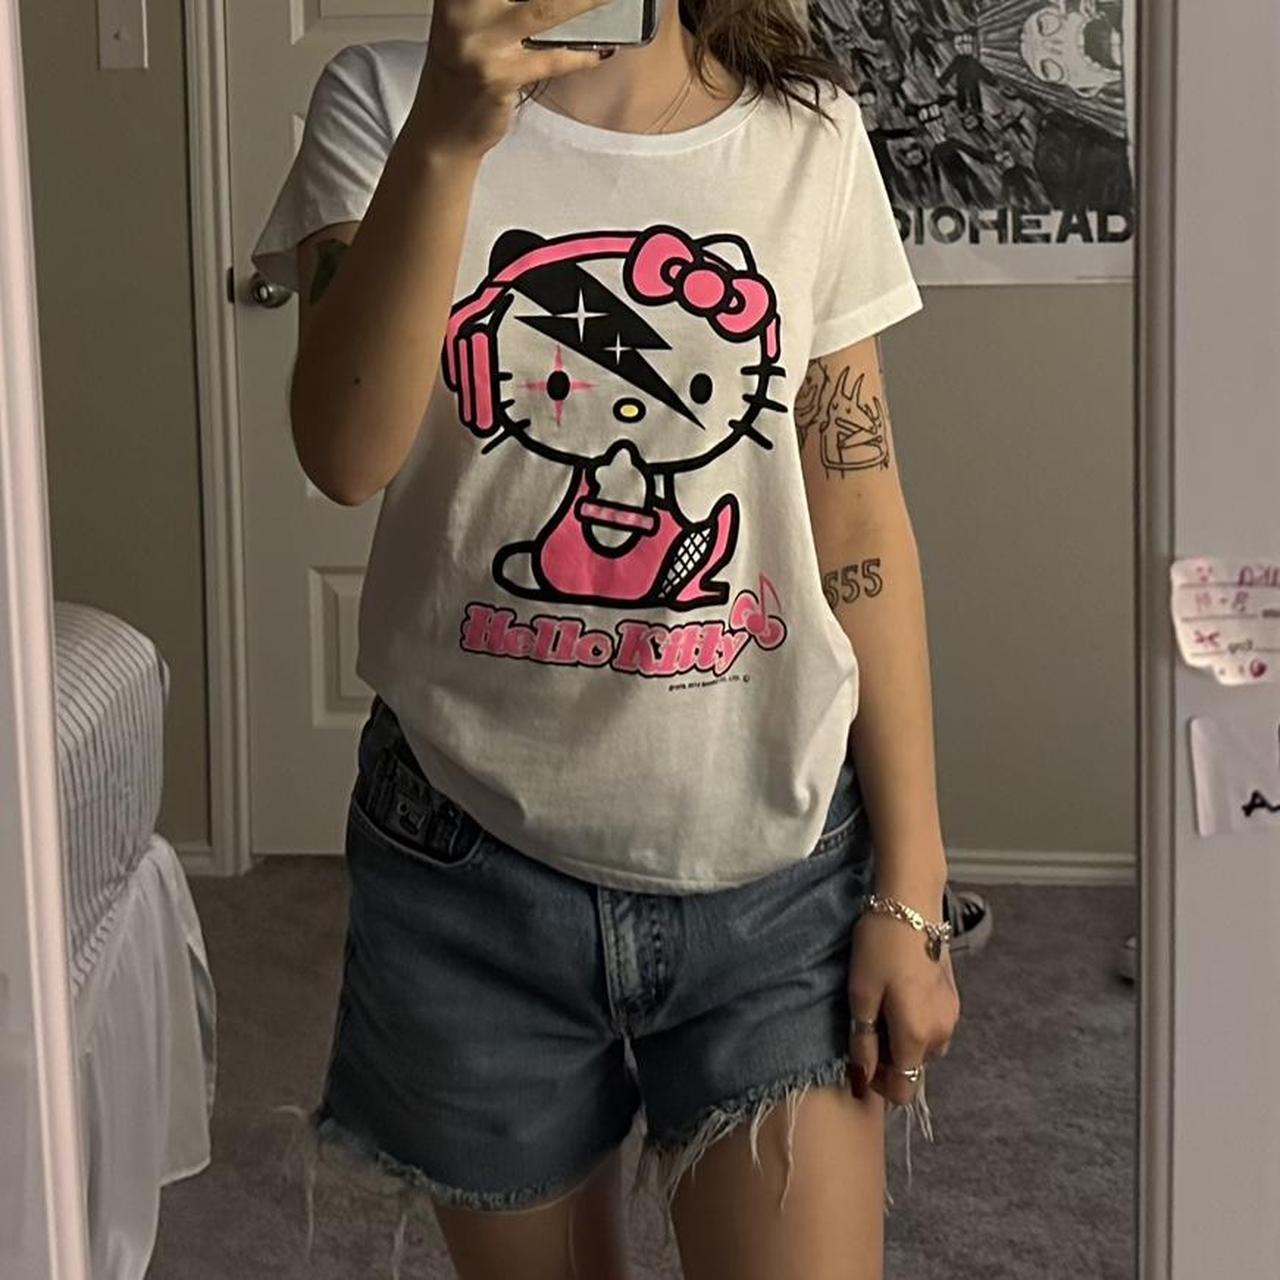 Sanrio Women's White and Pink T-shirt